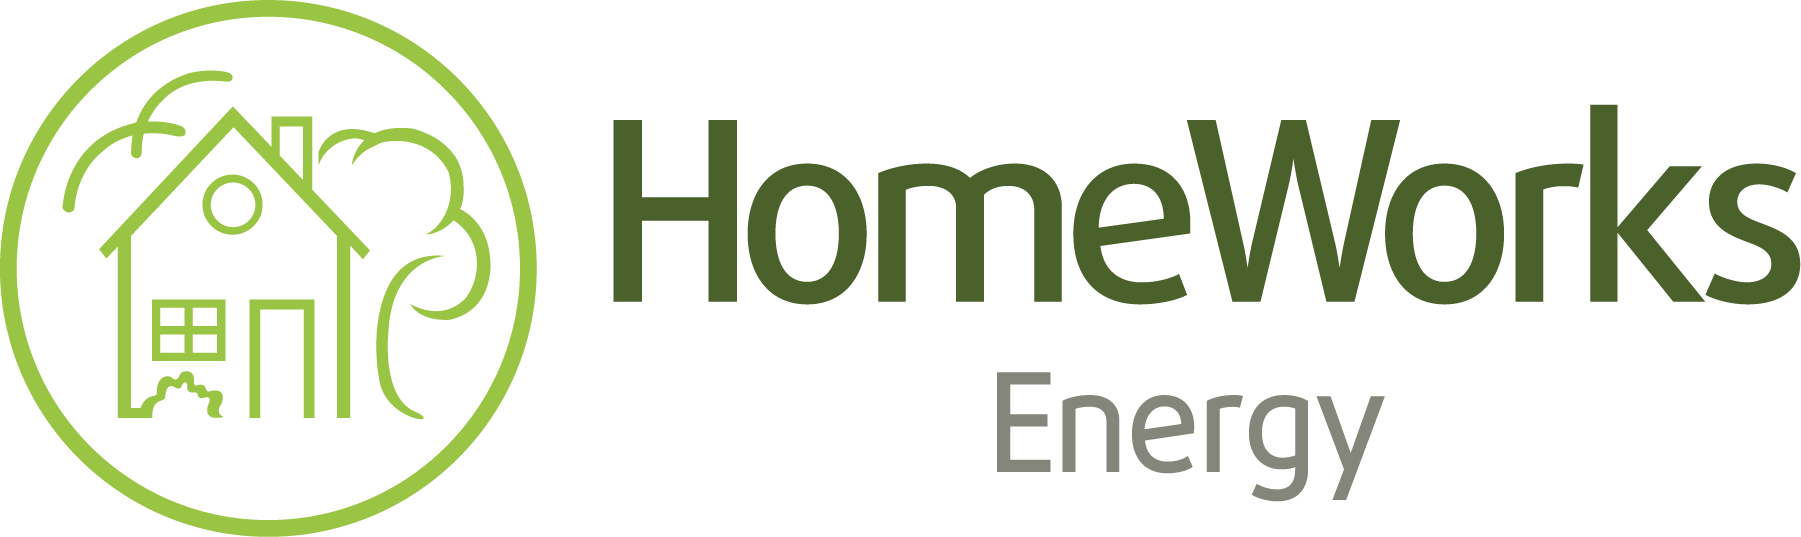 homeworks energy drink